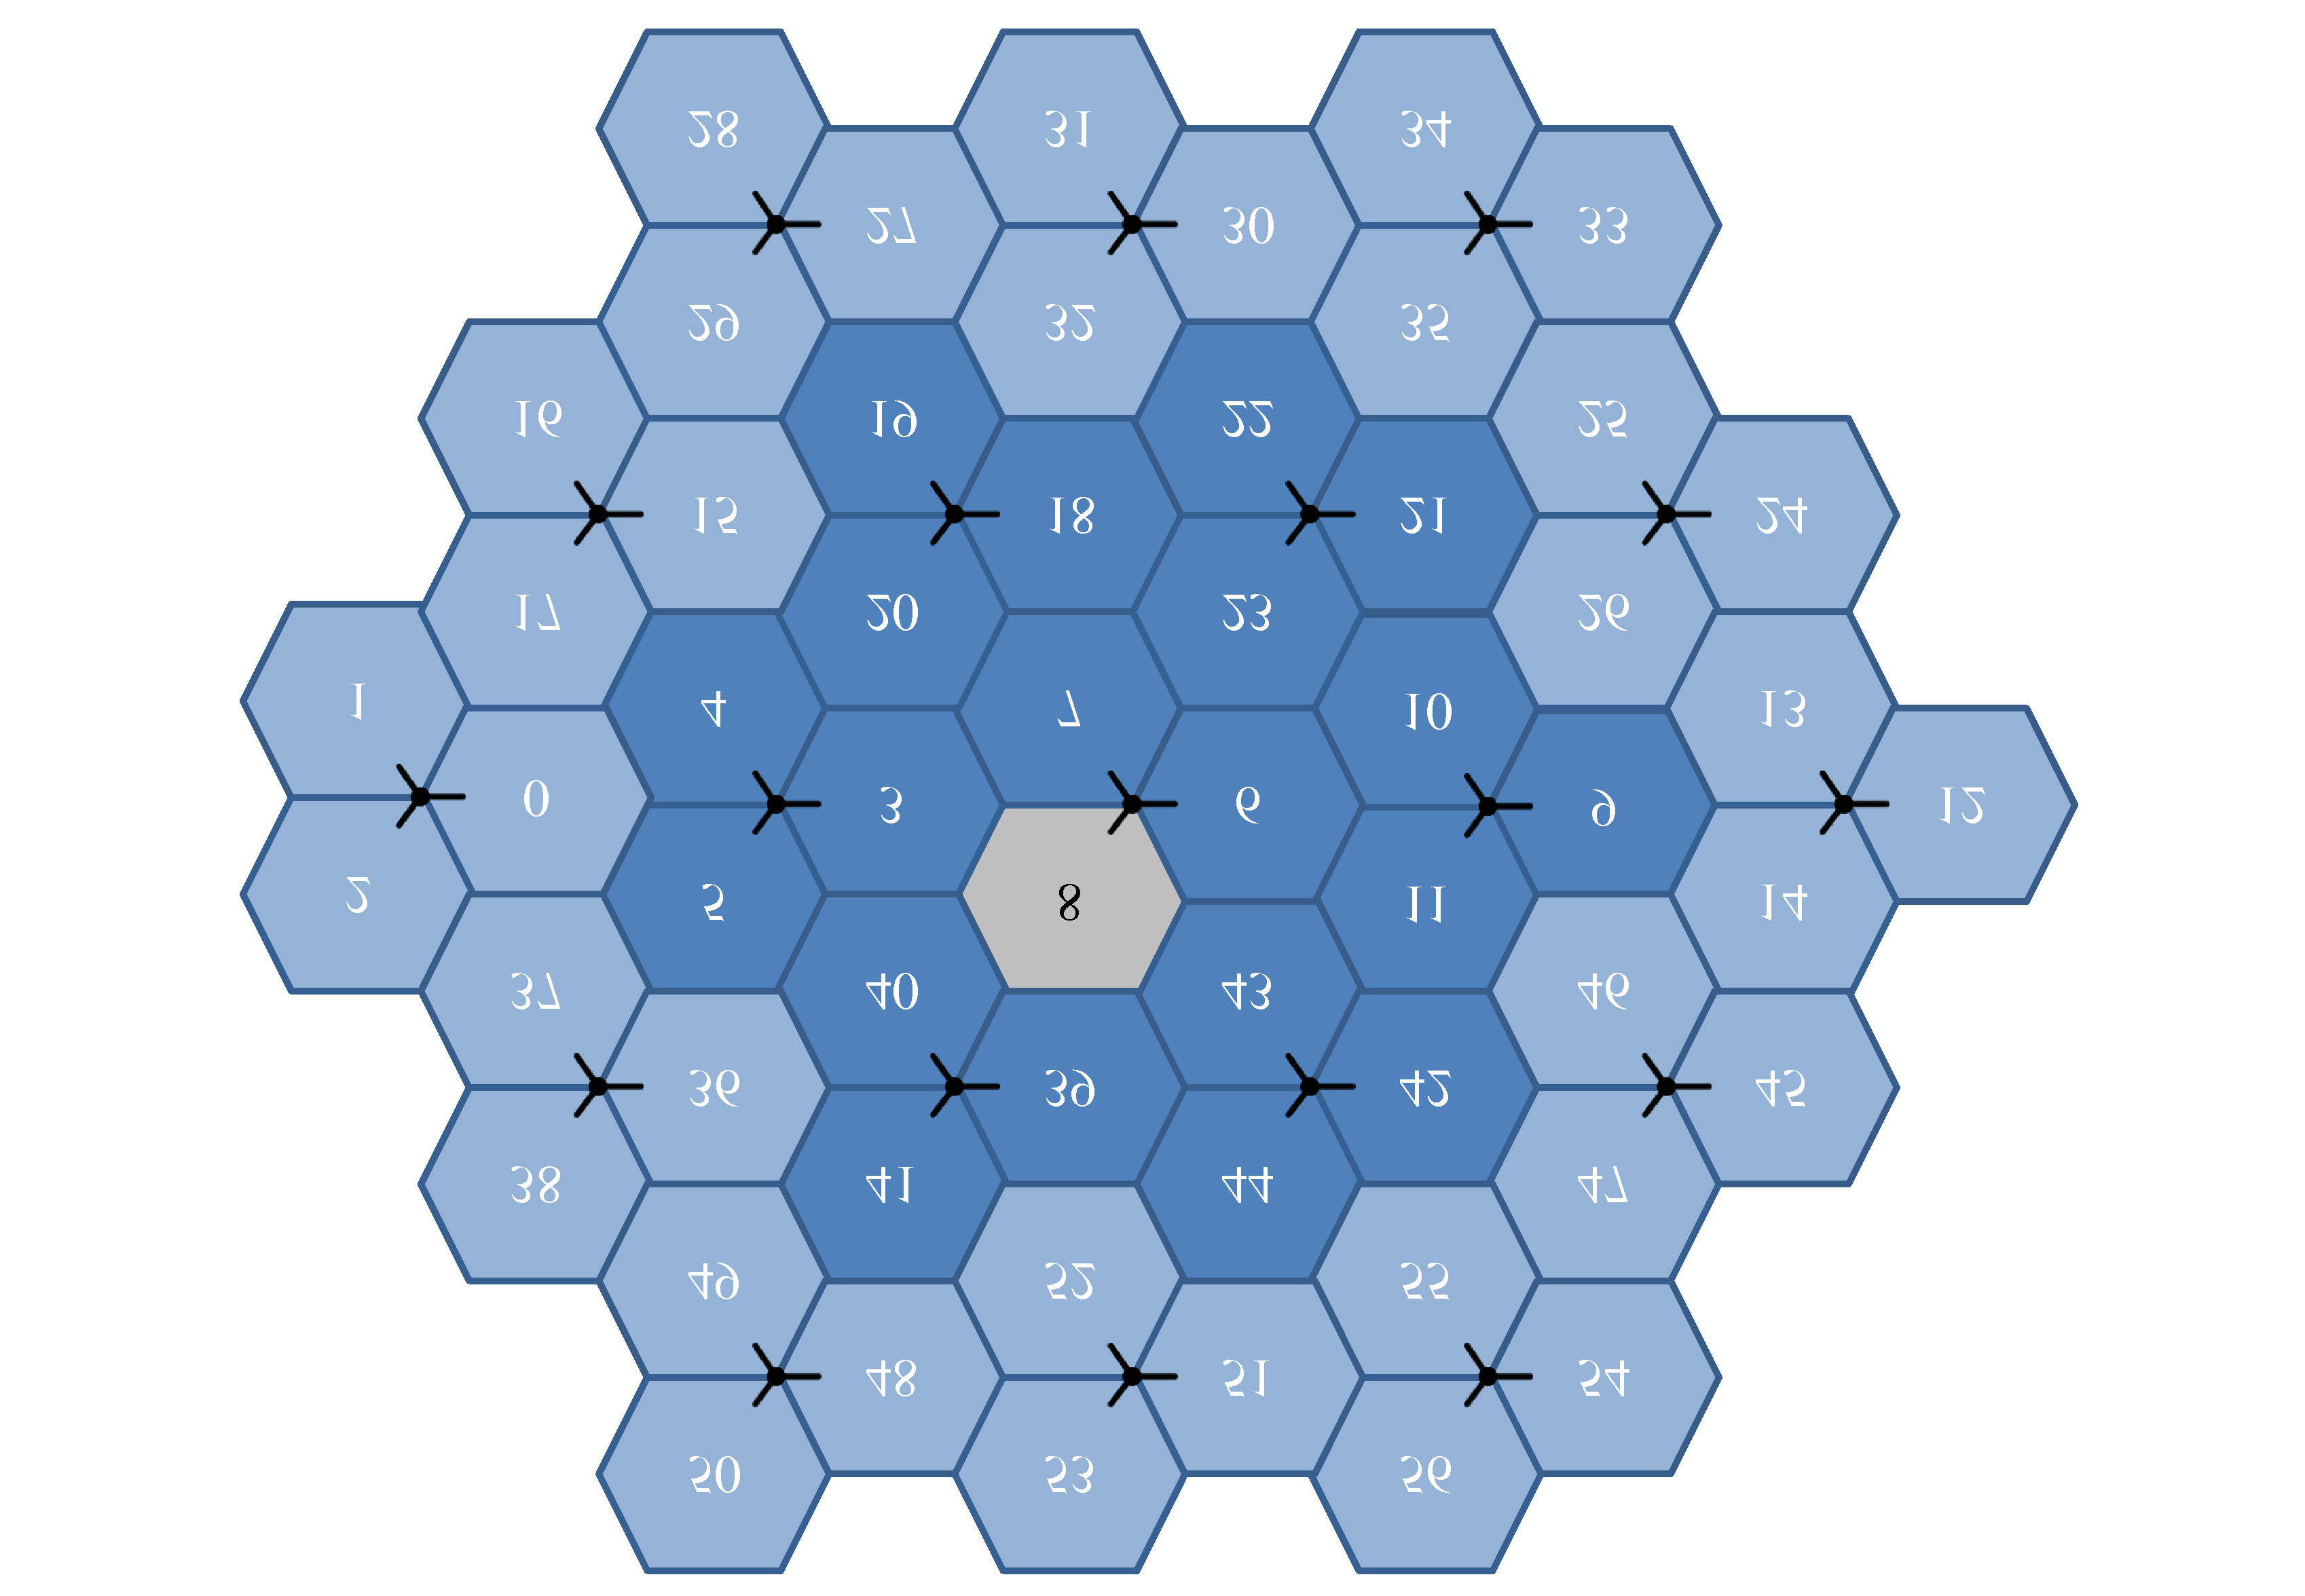 lua. Verkon simulointi perustuu seitsemään keskimmäiseen tukiasemaan (solut 3 11, 18 23 ja 39 44).